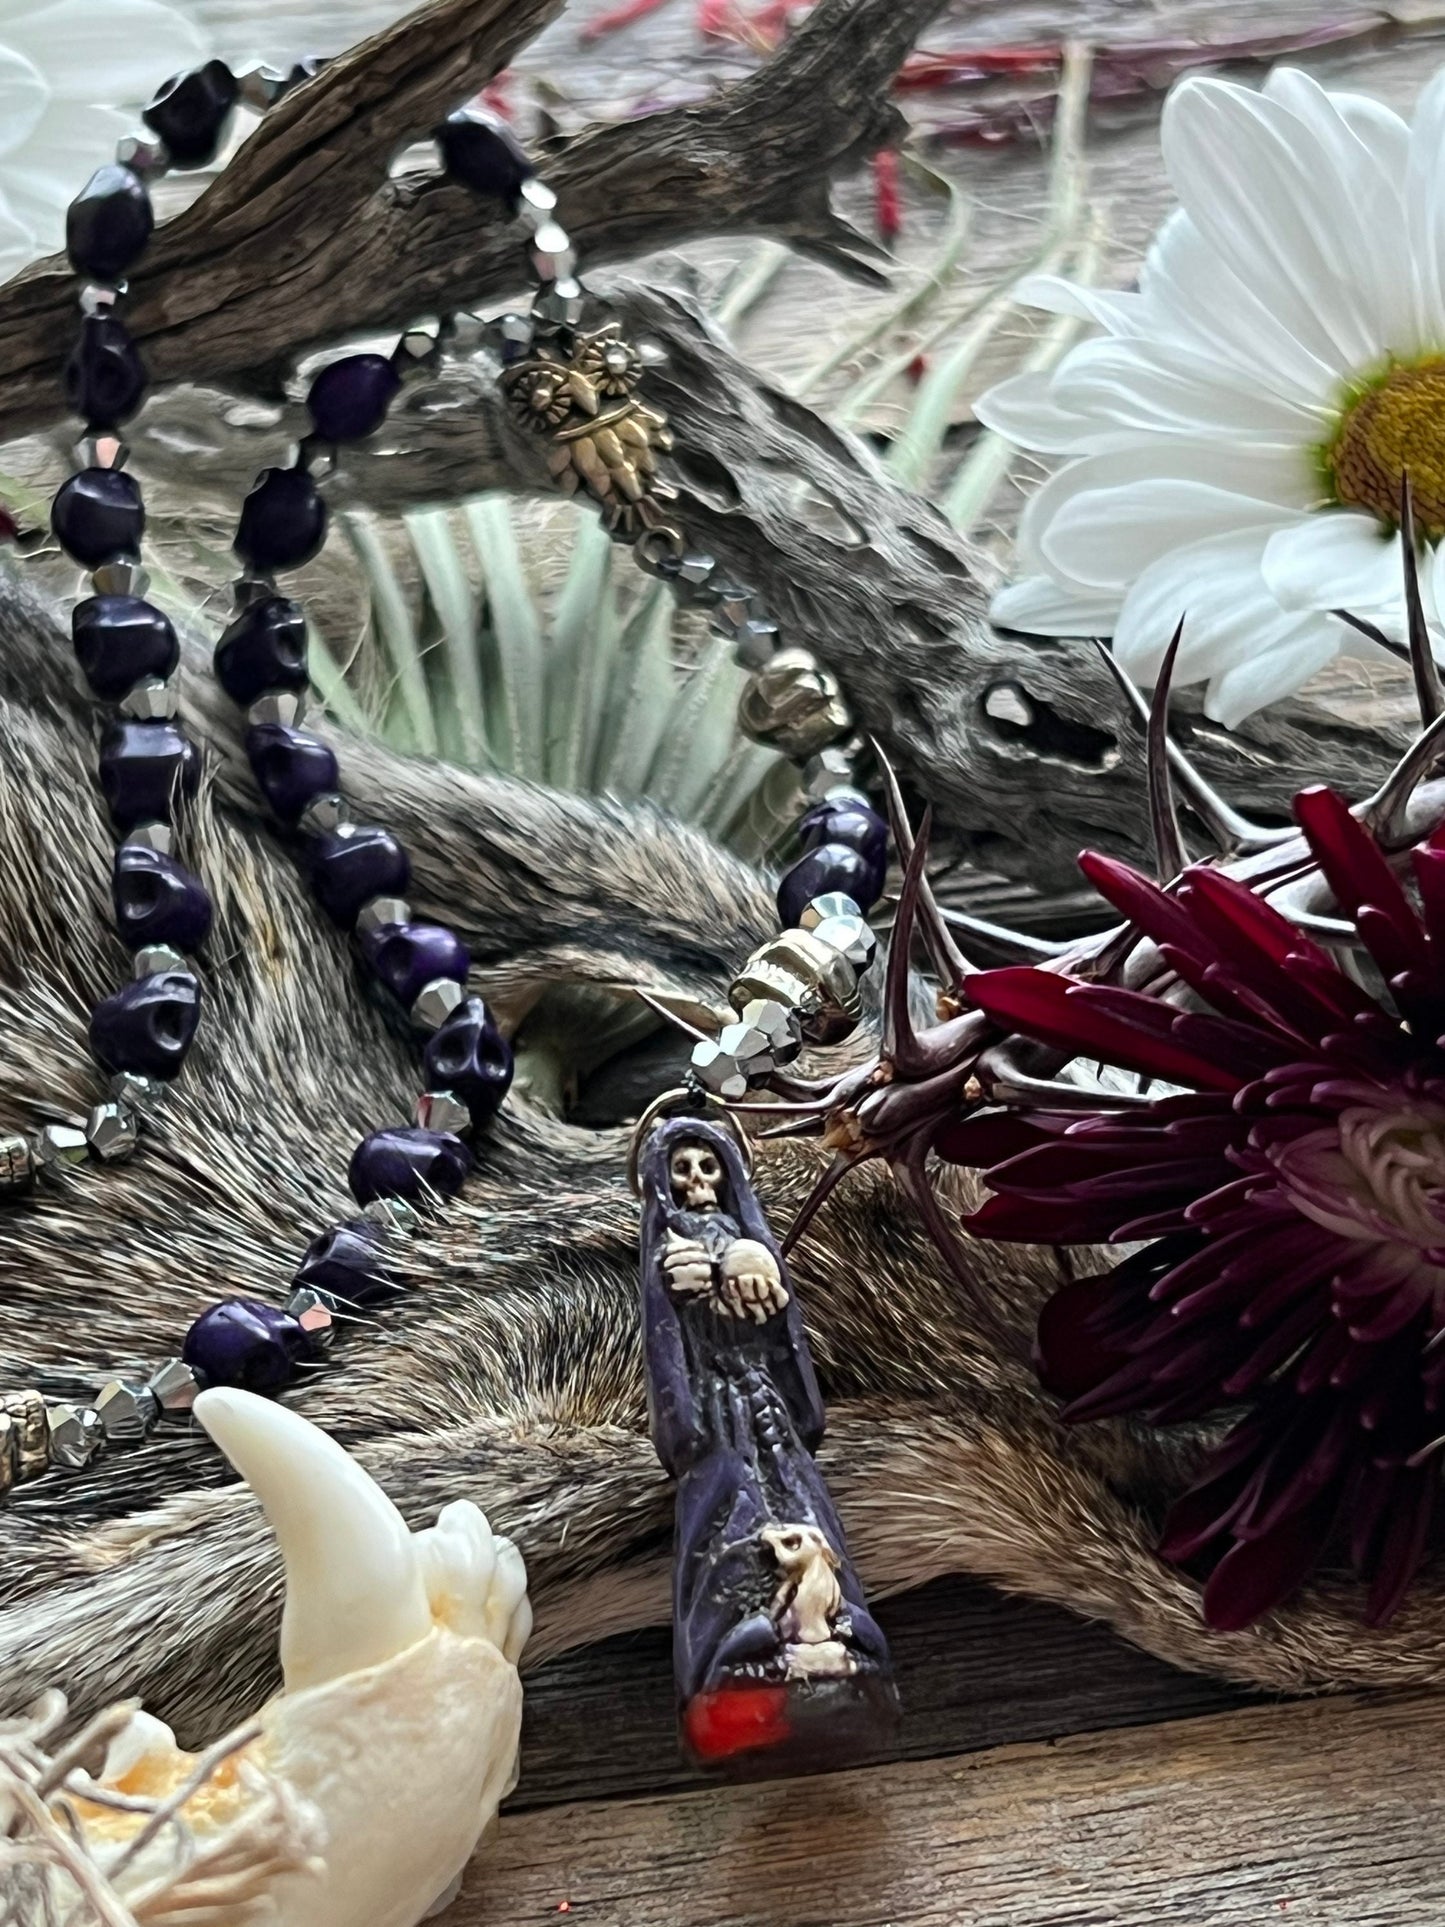 Santa Muerte Morada de Hilo Rosary + Purple + Handcrafted + Rosario